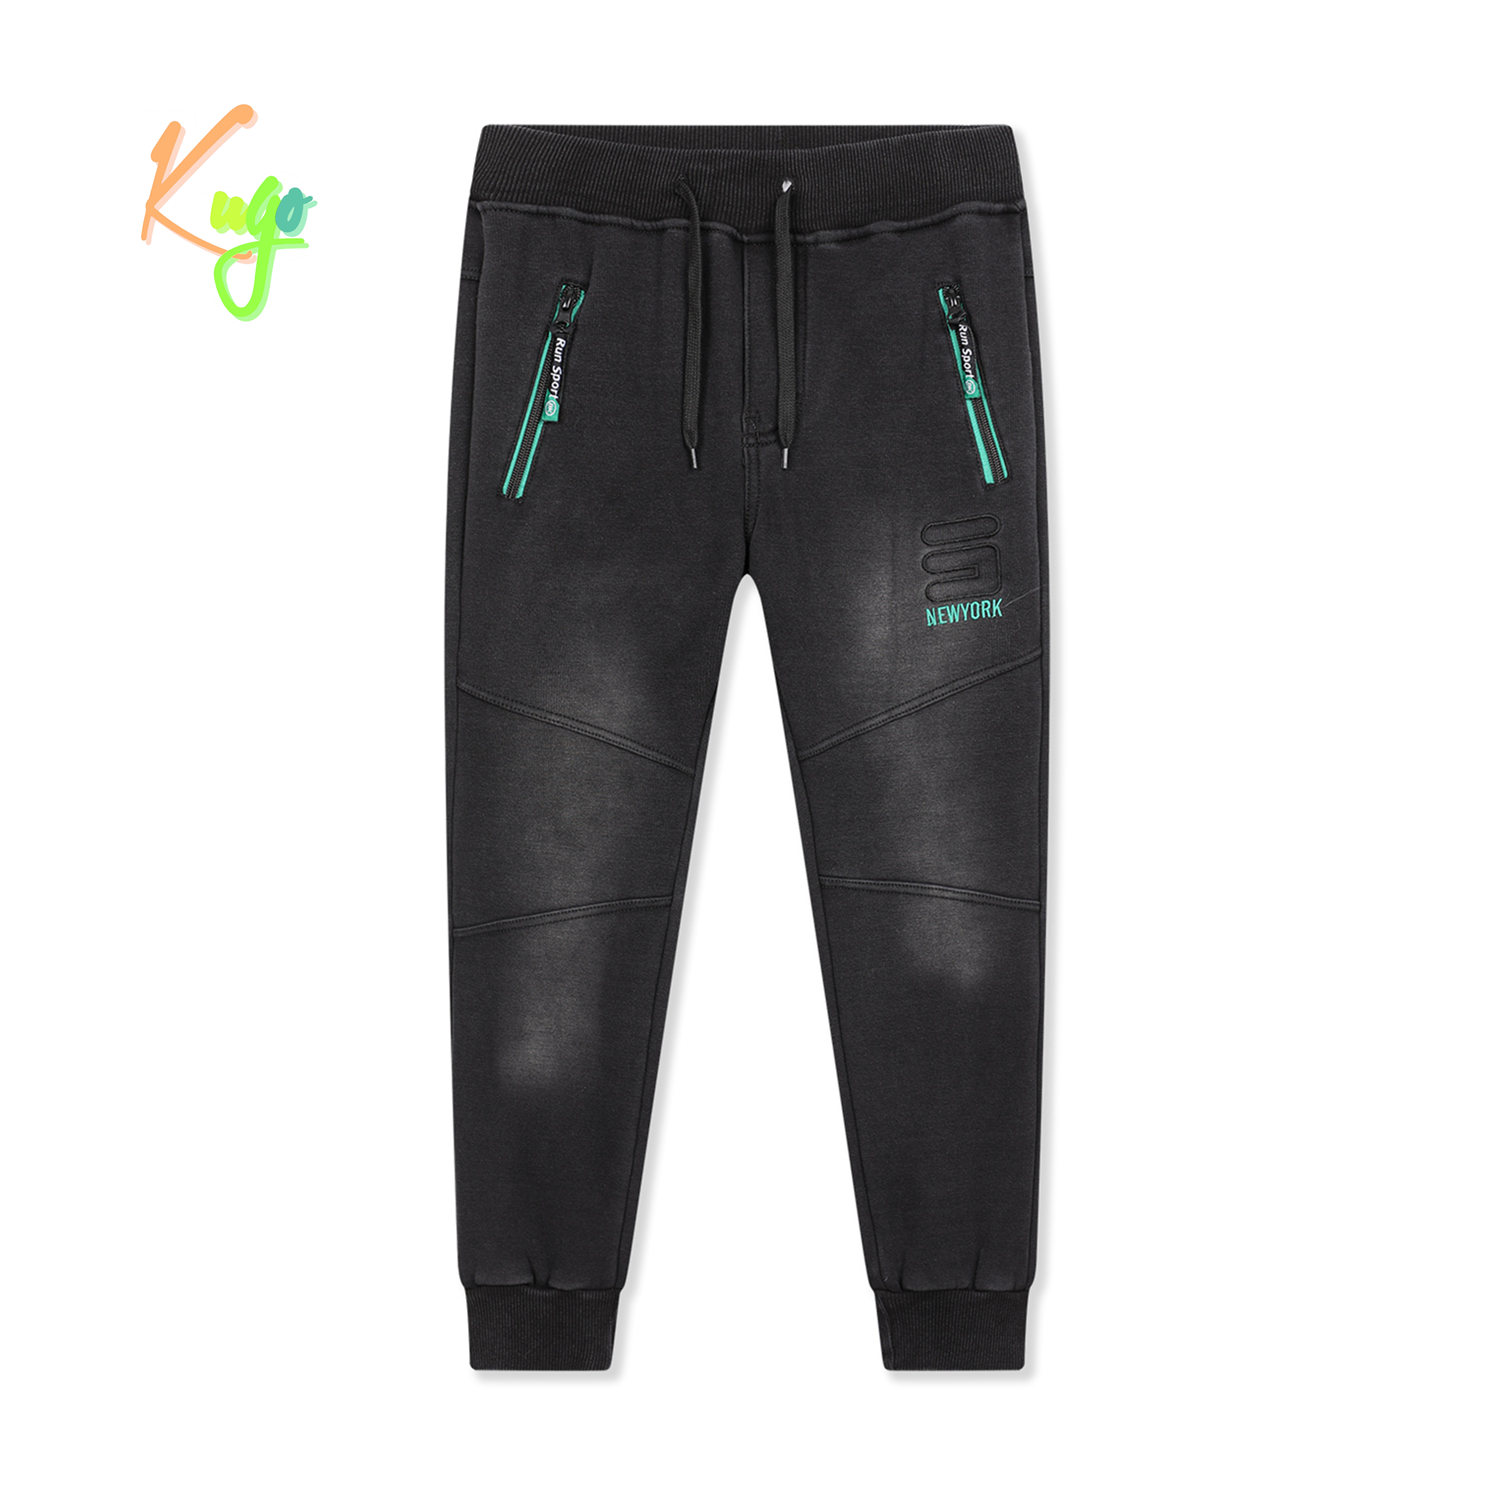 Chlapecké riflové kalhoty/ tepláky, zateplené - KUGO FK0318, černá Barva: Černá, Velikost: 134